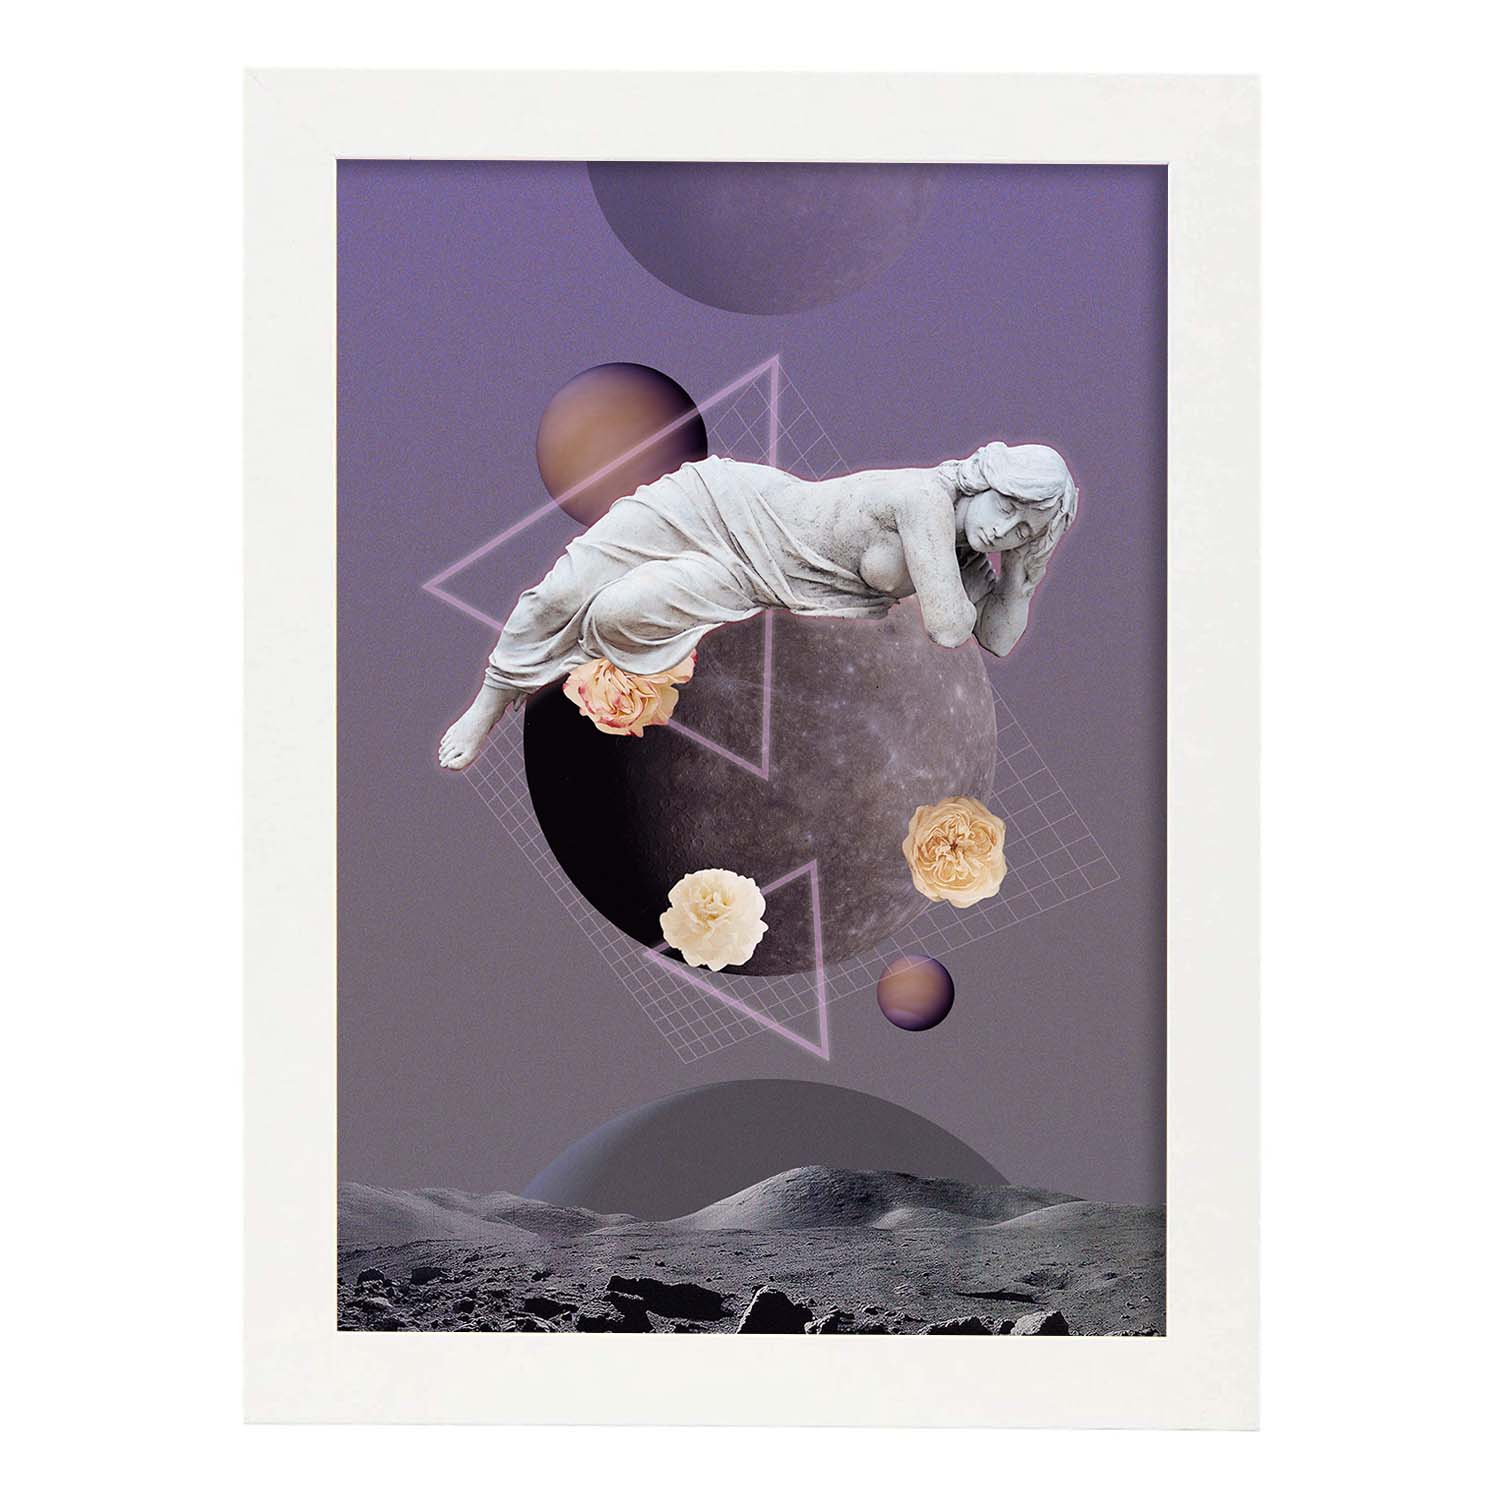 Lamina artistica decorativa con ilustración de Collage surrealista 27 estilo Collage-Artwork-Nacnic-A4-Marco Blanco-Nacnic Estudio SL